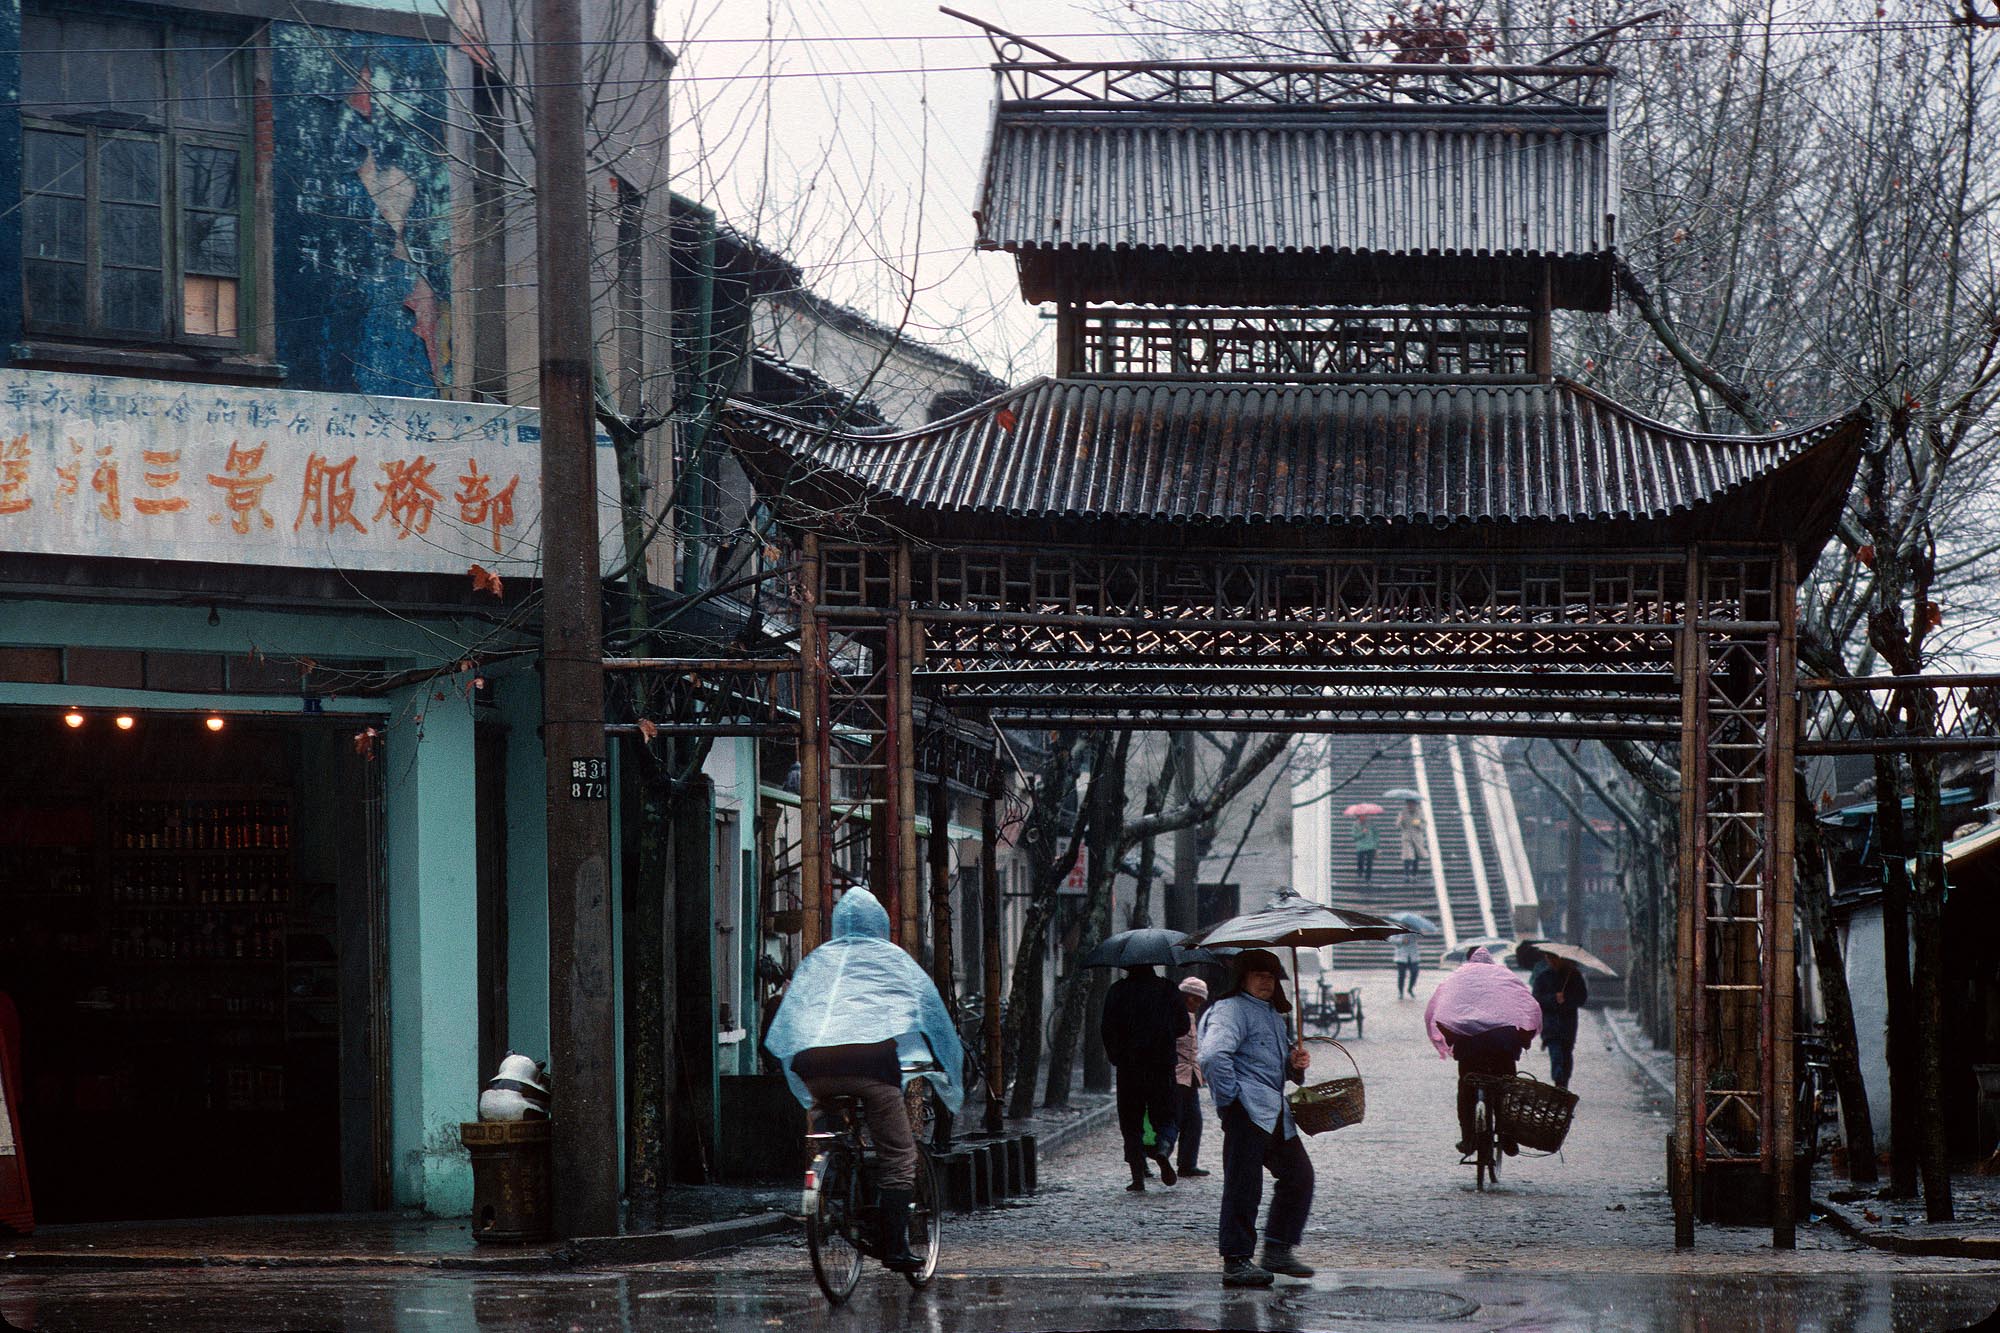 bill-hocker-bridge-street-suzhou-china-1988